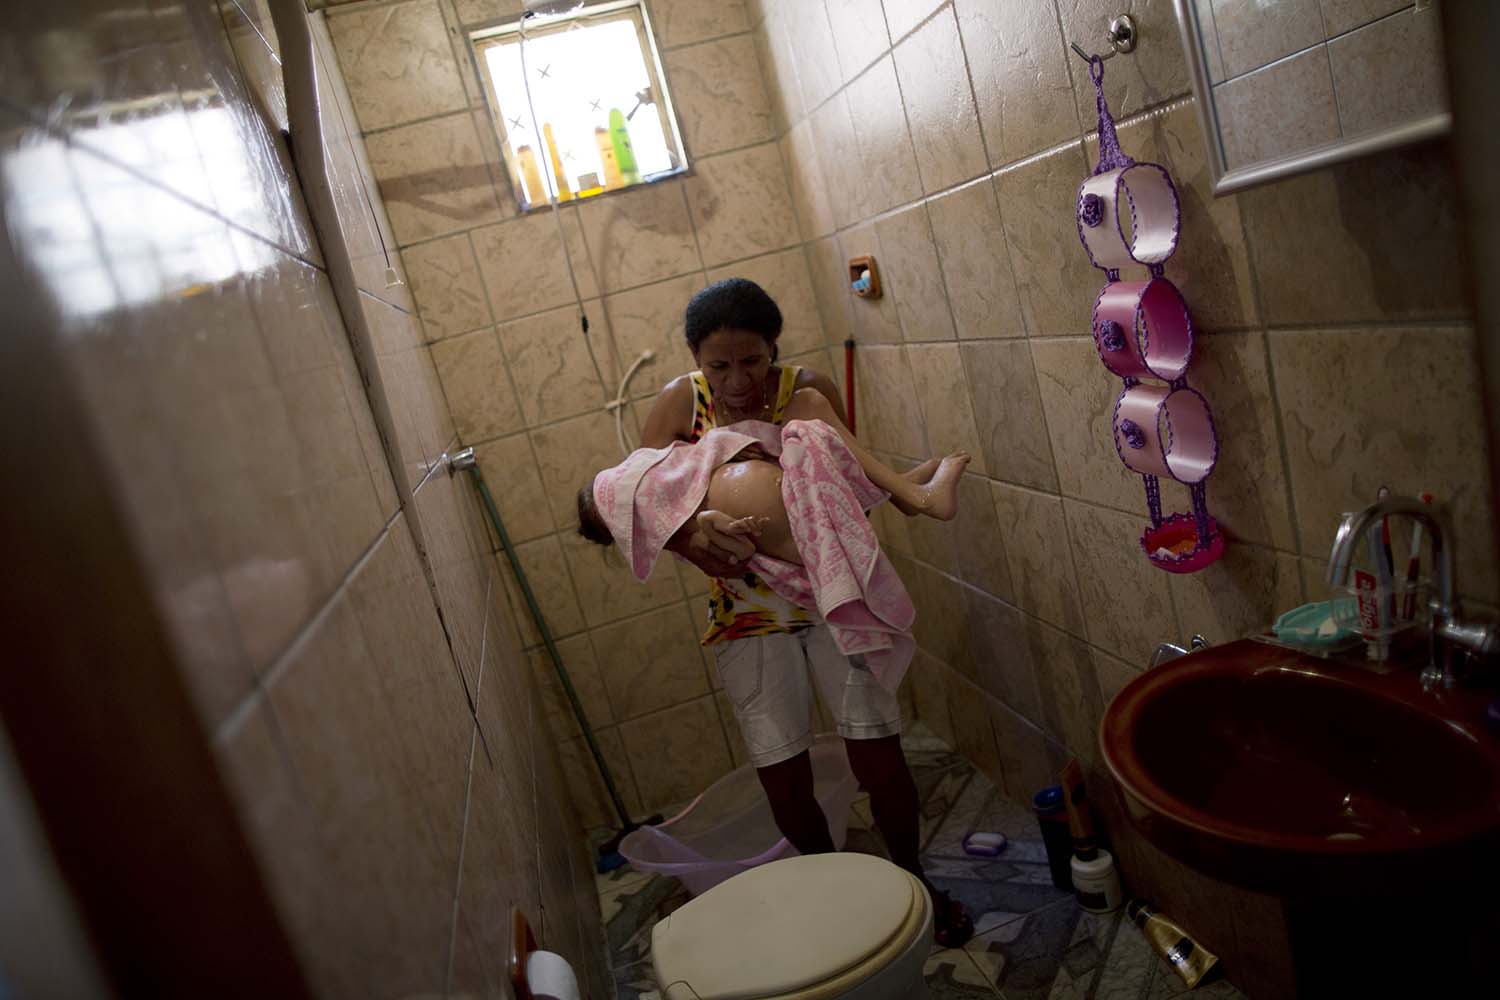 Especial Vivir con lo mínimo. Una madre brasileña recibe 222 euros al mes por su hija con parálisis